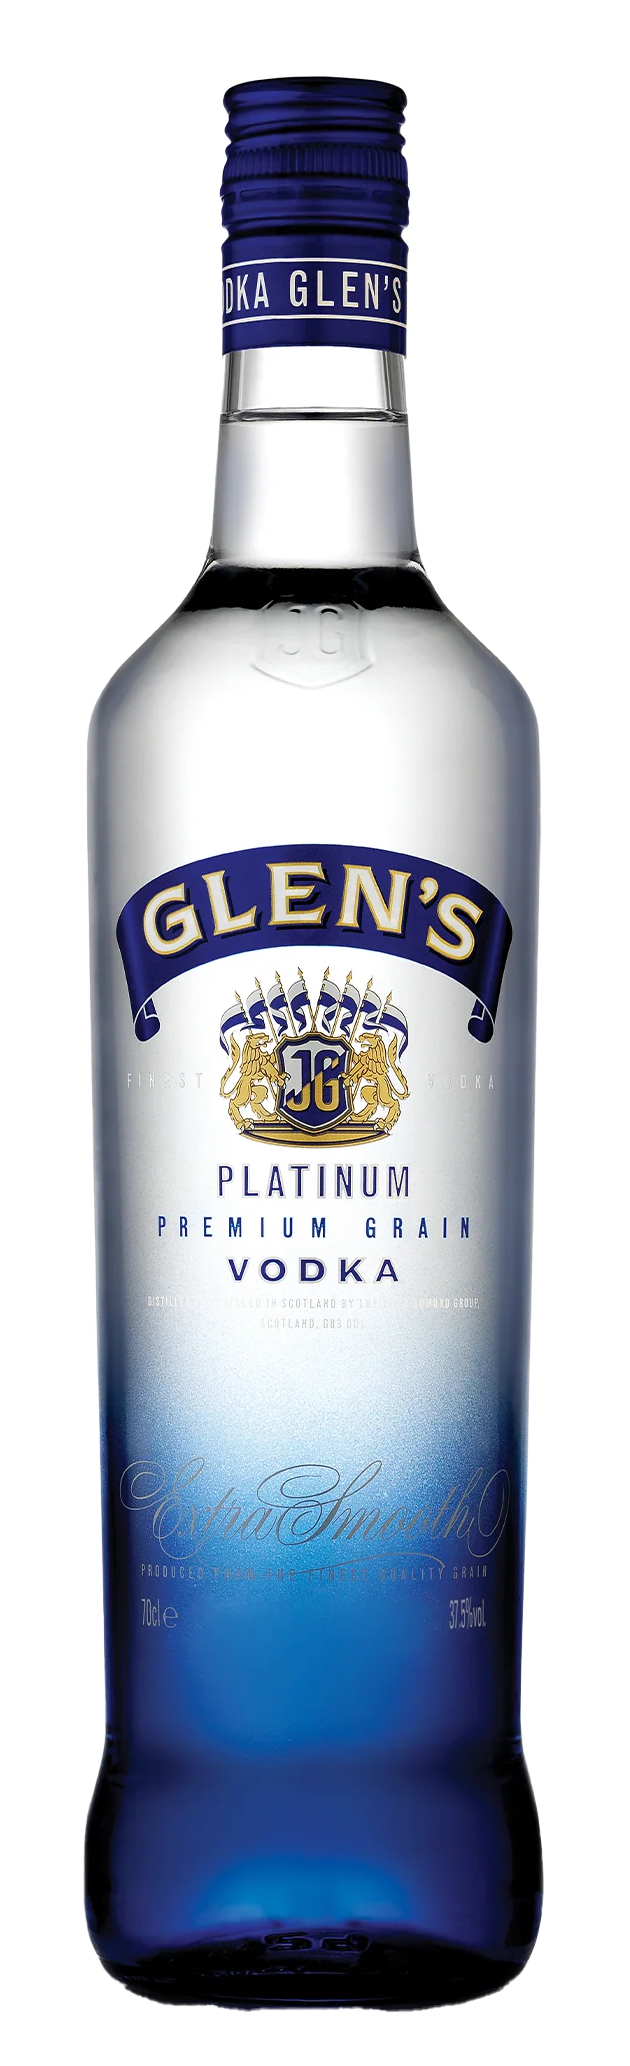 Glen's Platinum Grain Vodka (0,7l)